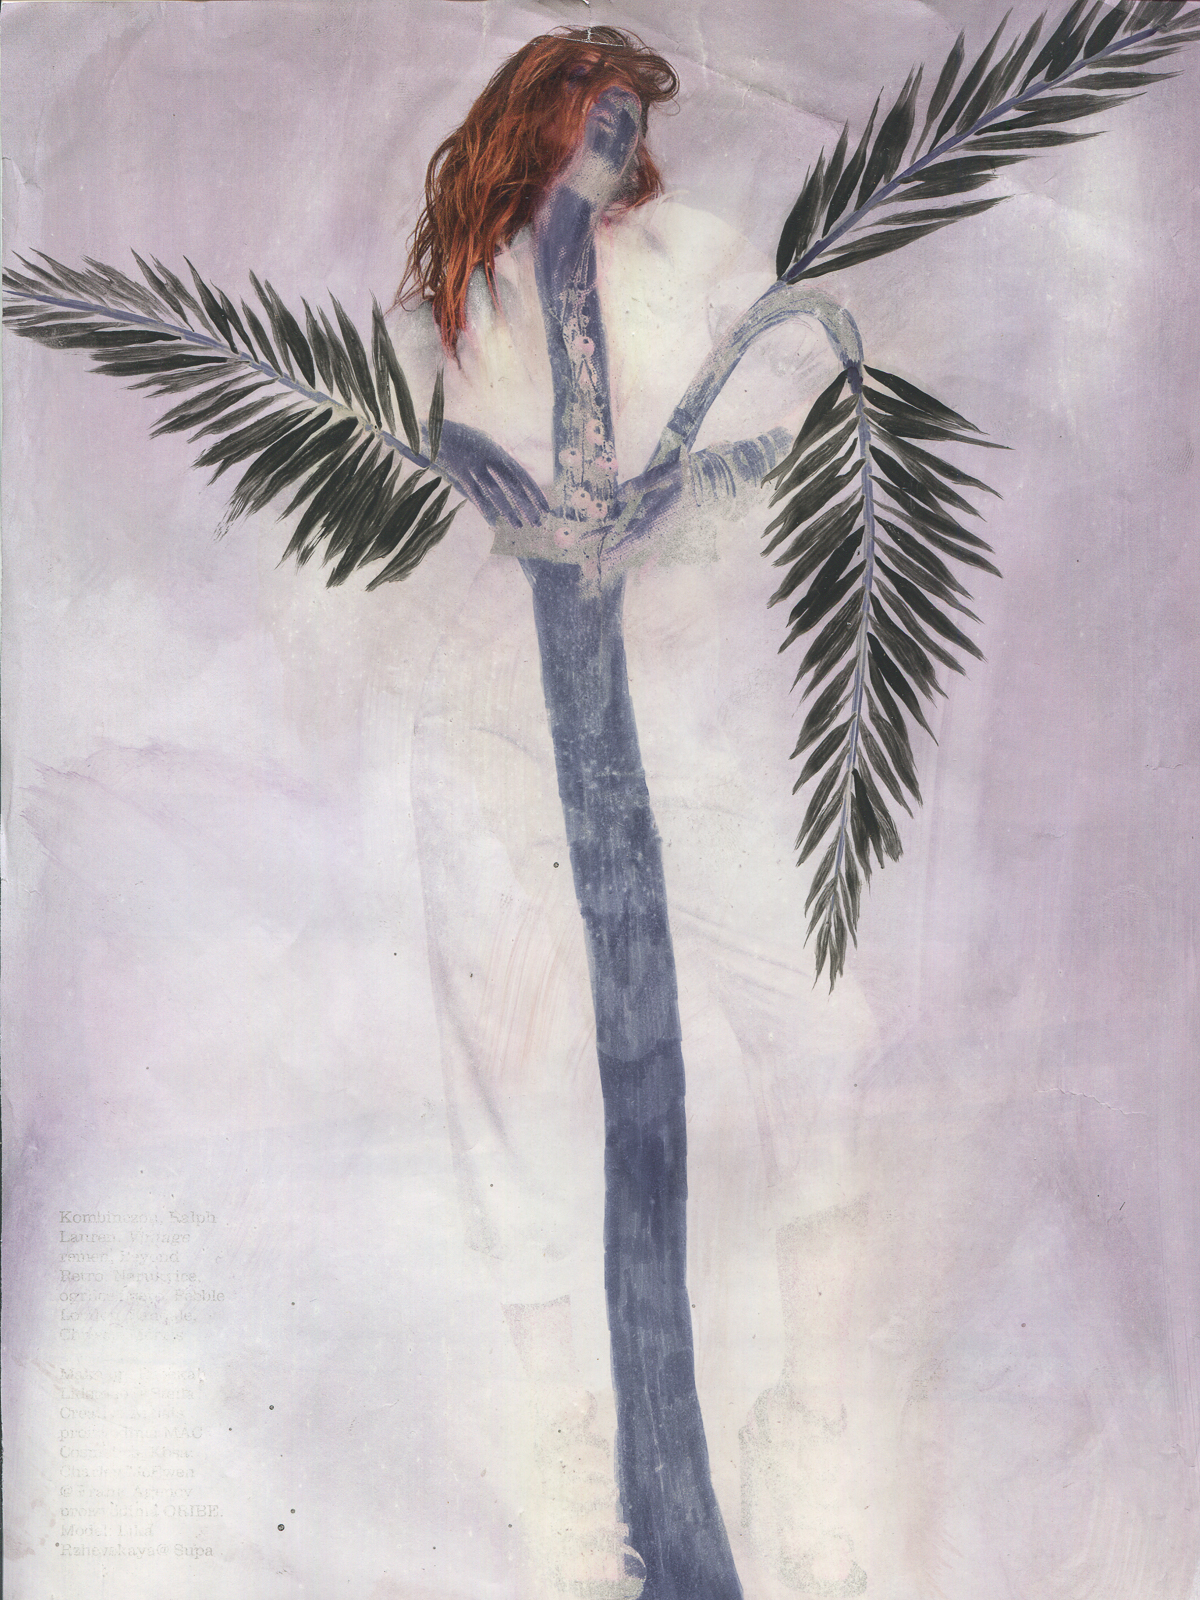 "Negative sun bath", 2017, lavenderoil, oil paint, feltpen on magazine page, 21.6 x 29.2 cm